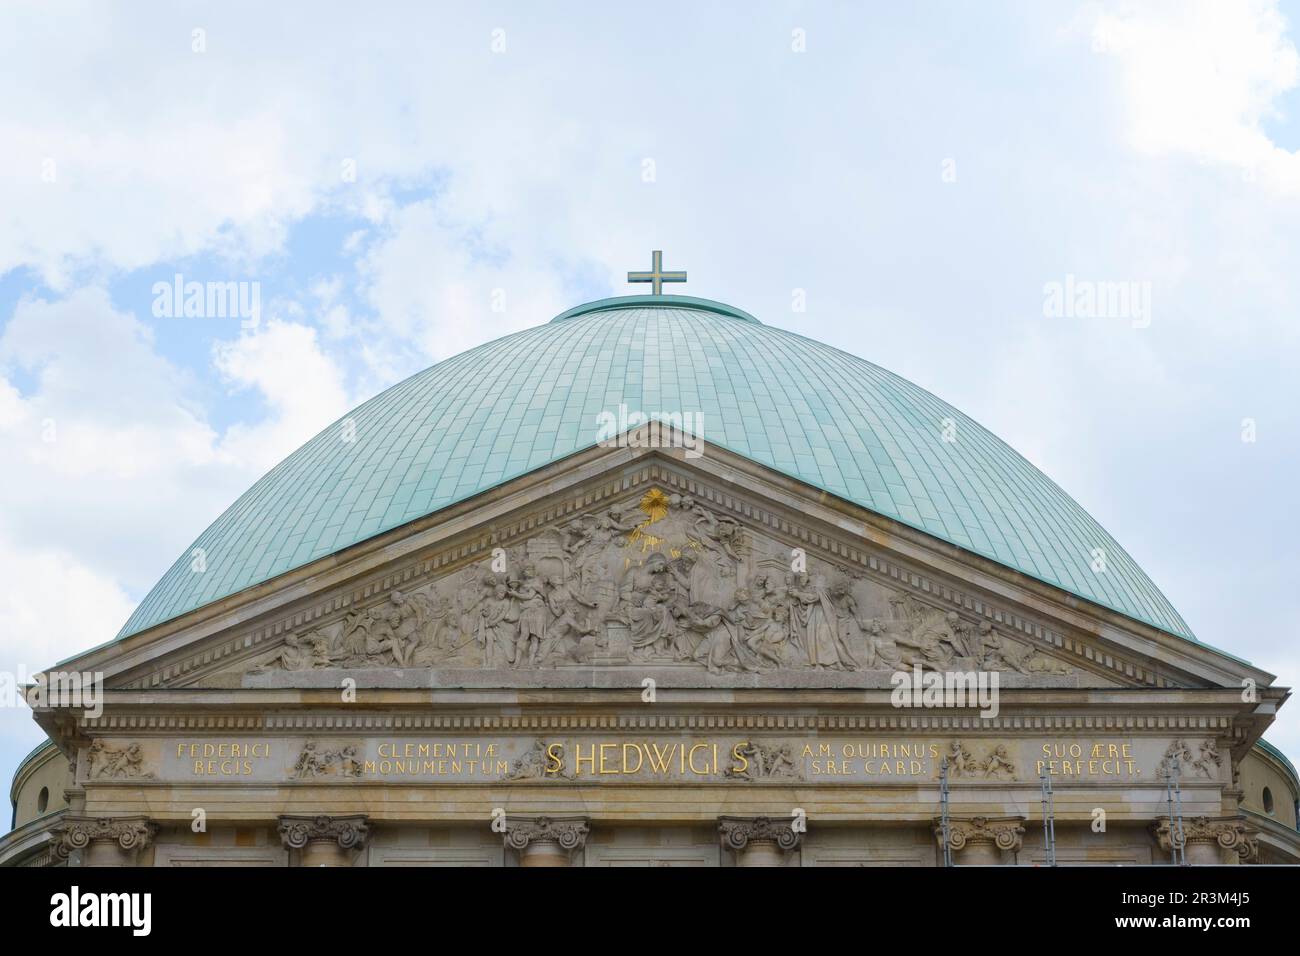 St Cattedrale di Hedwigs, Berlino Foto Stock